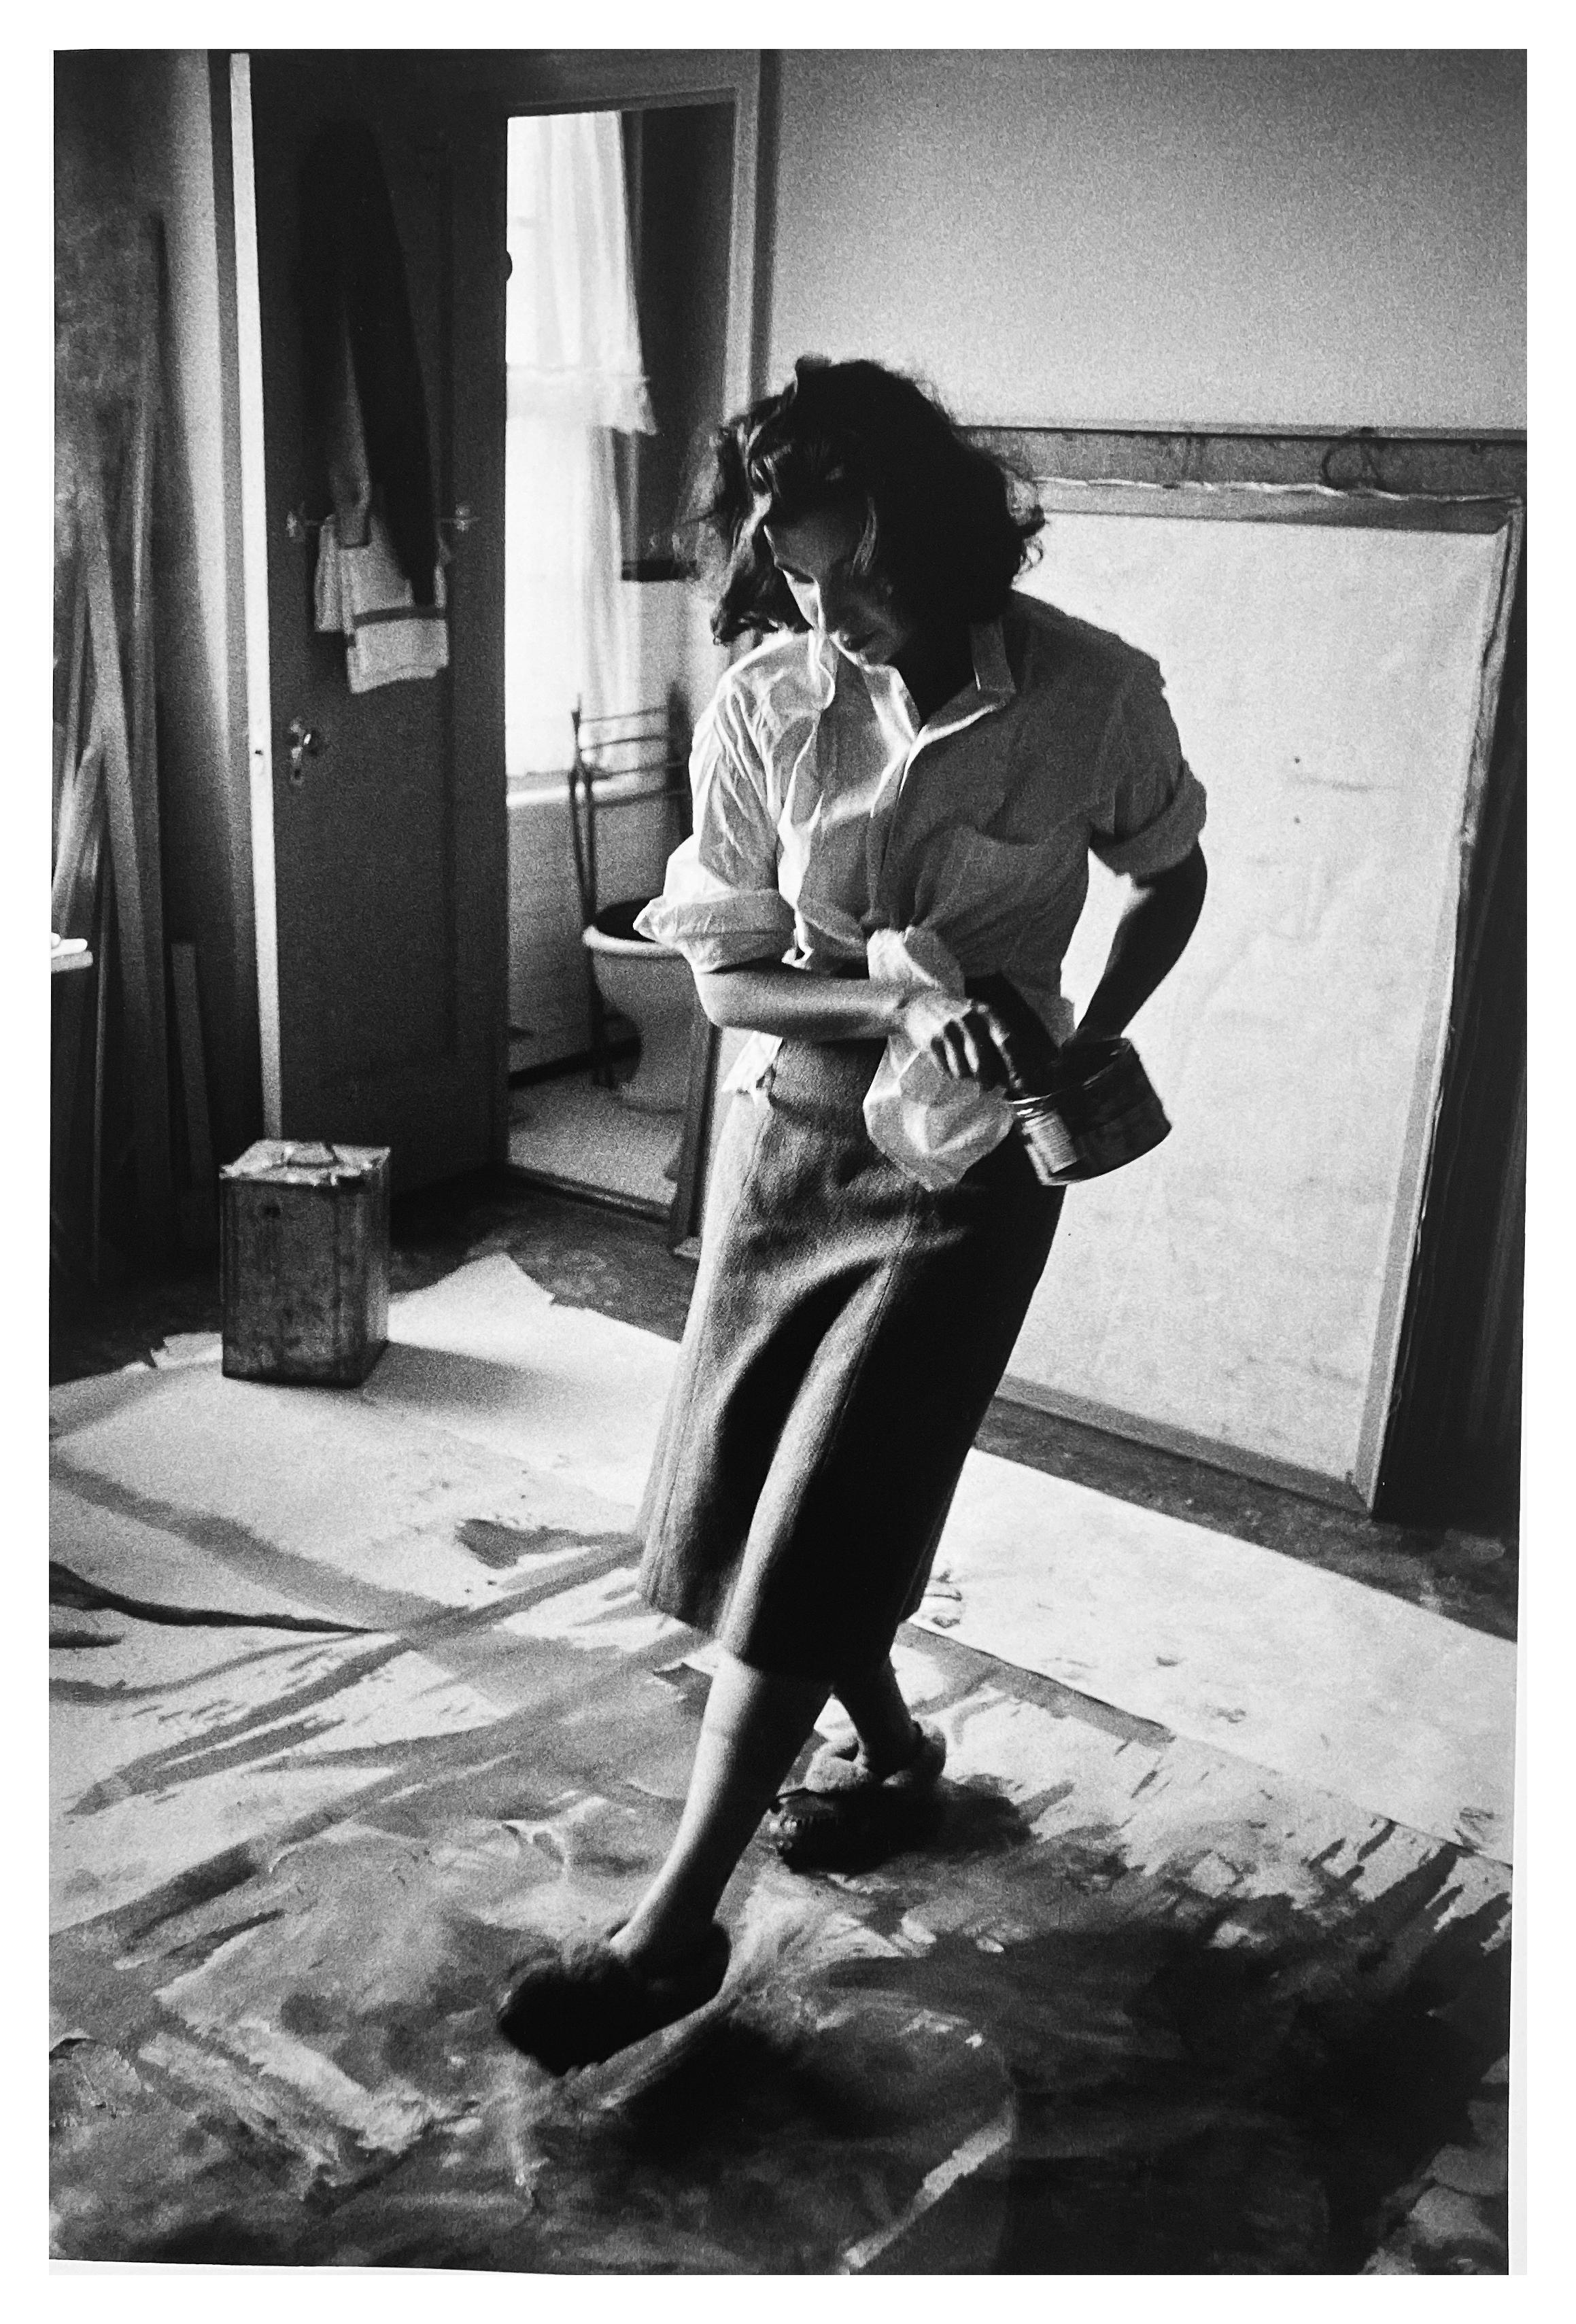 Helen Frankenthaler, Malerin New York City, Fotografie einer Künstlerin als Frau, 1950er Jahre